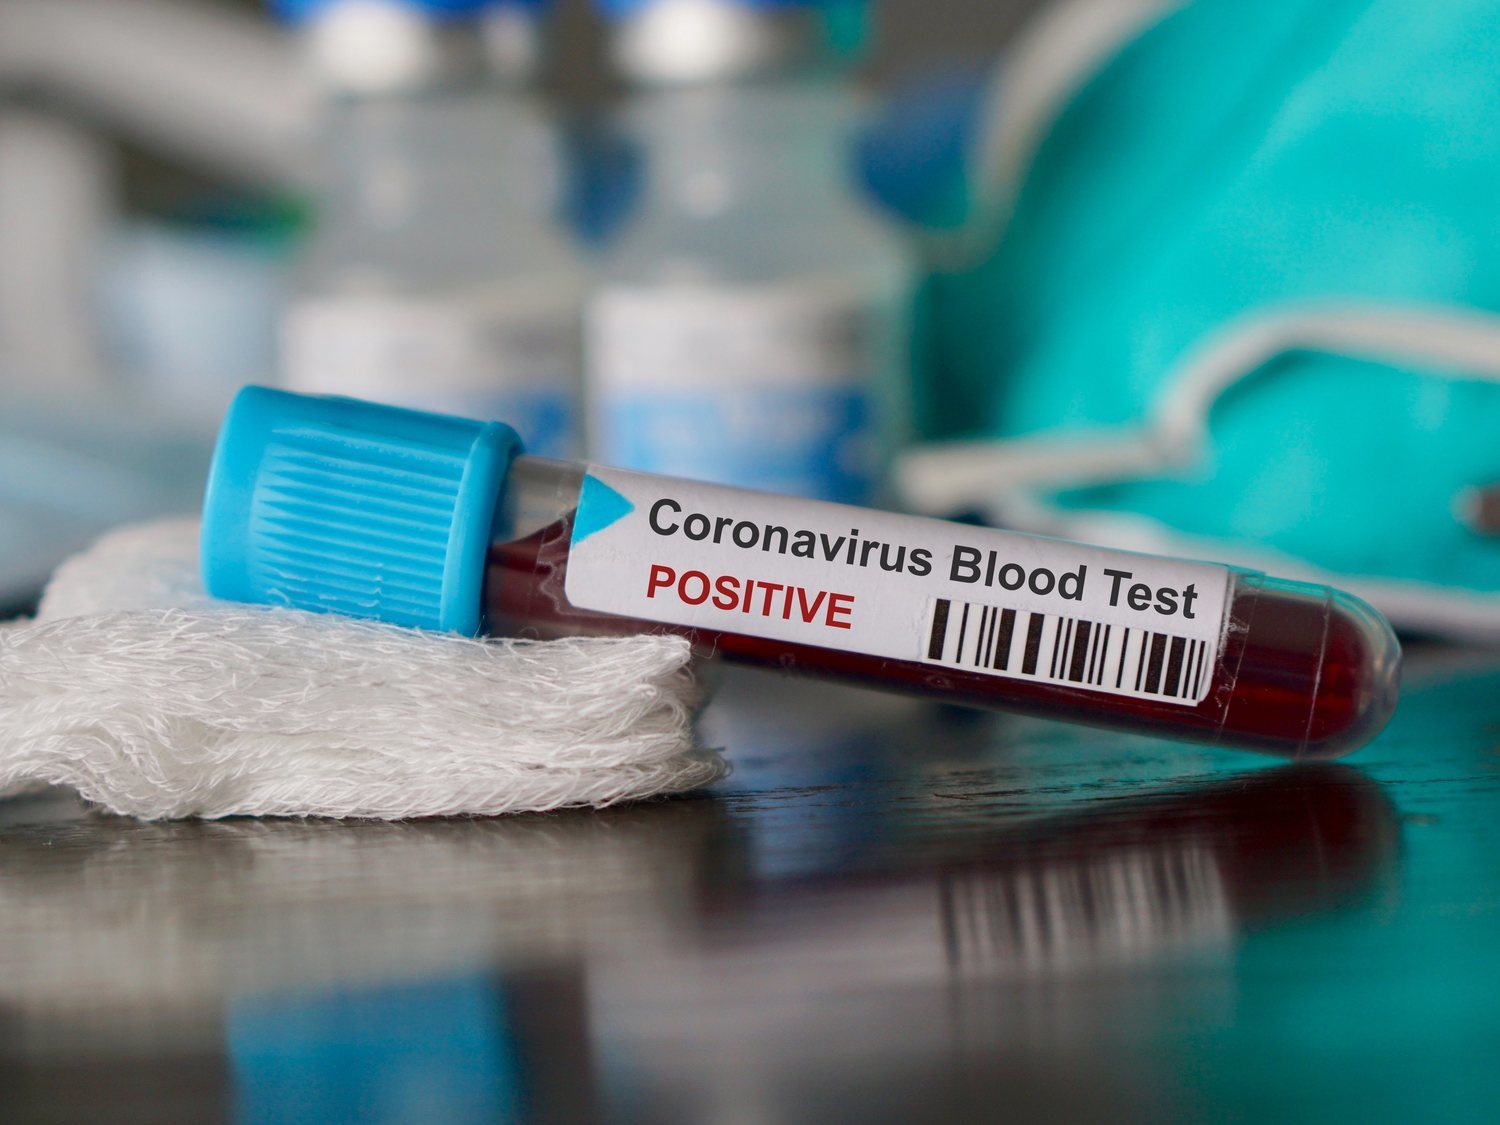 China acusa a España de comprar test de coronavirus sin licencia y el Gobierno indica su homologación europea